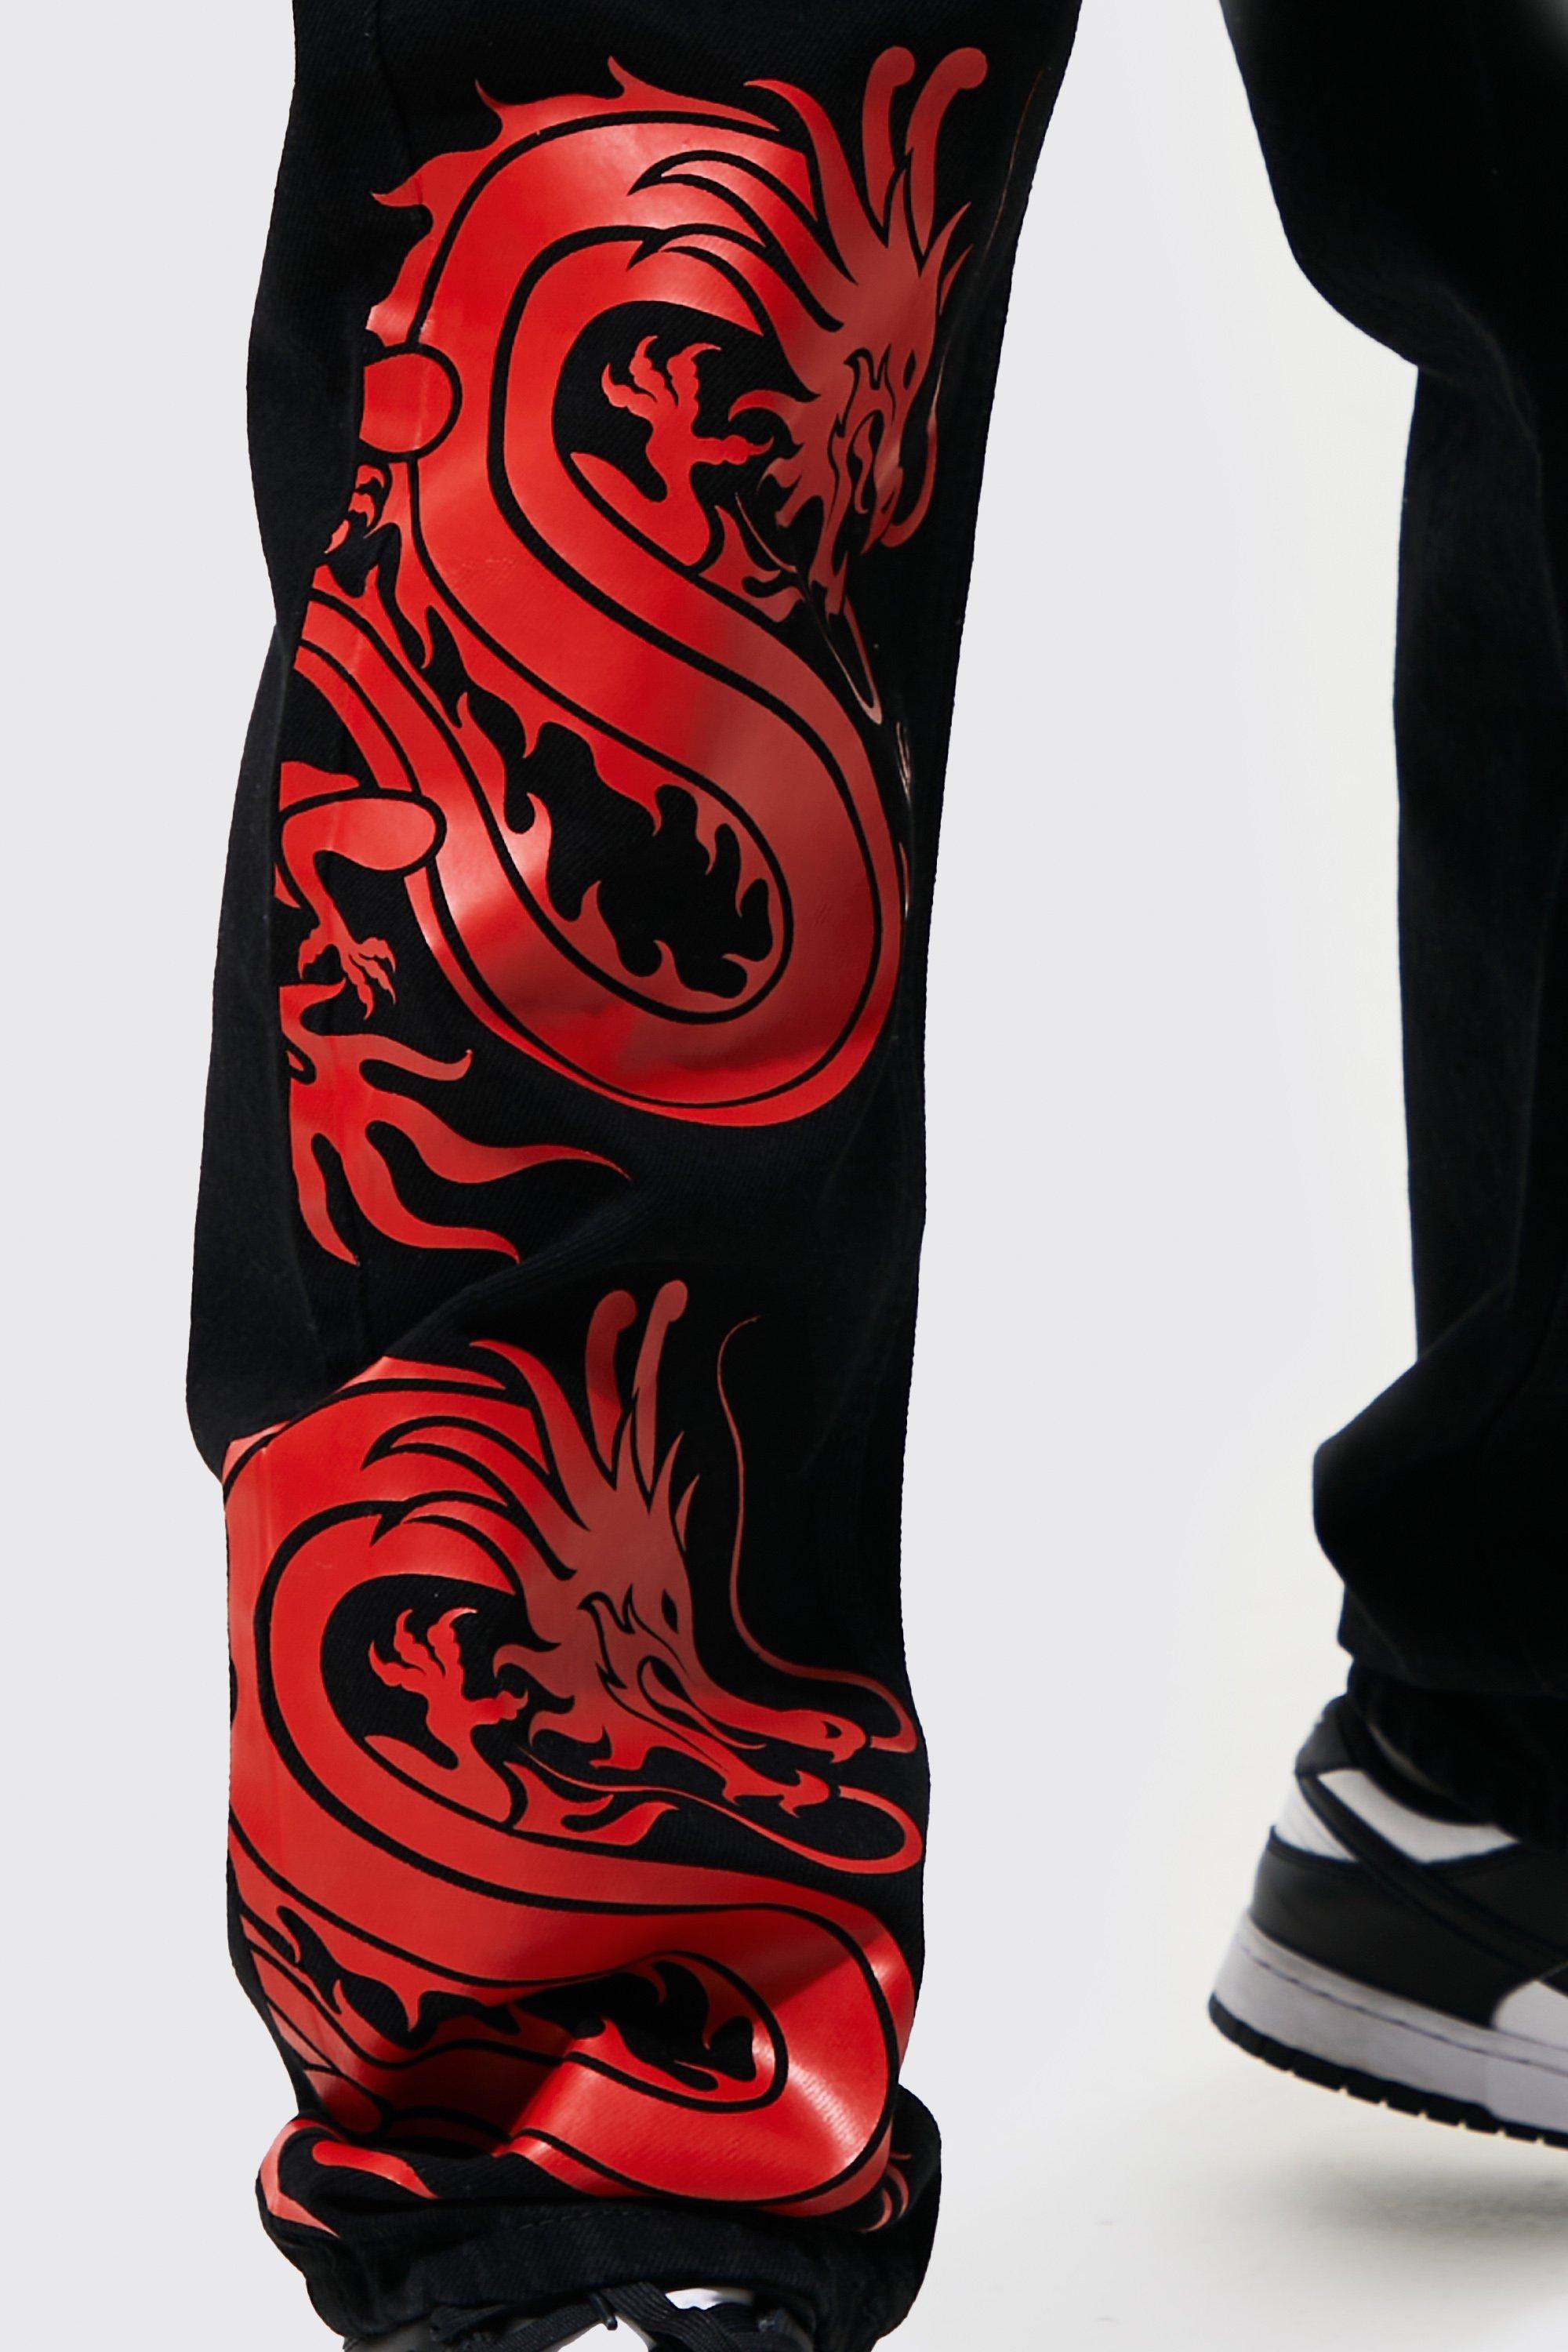 Pantalones holgados para hombre, diseño de dragón